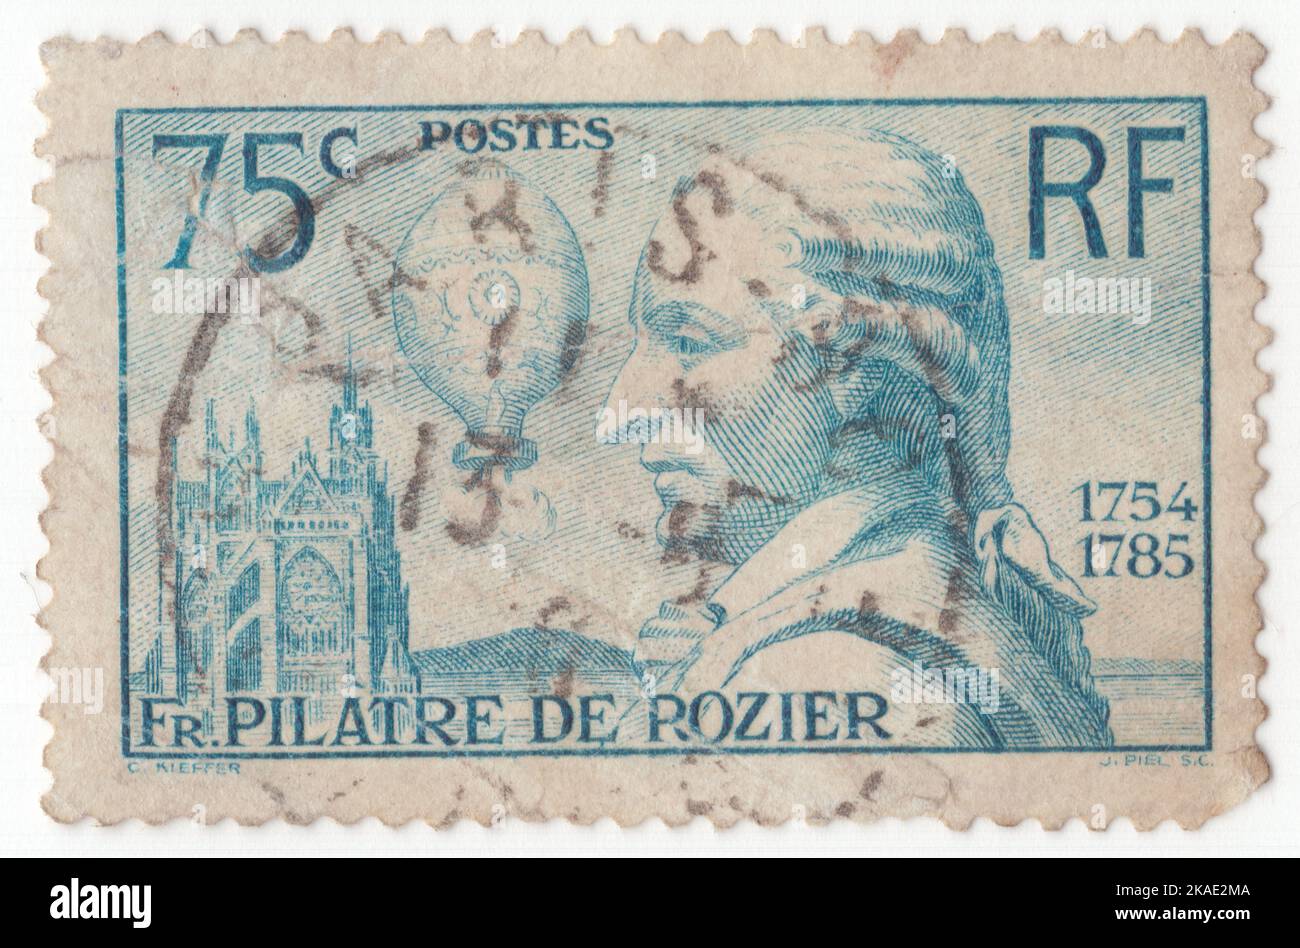 FRANKREICH - 1936. Juni 4: Eine 75 Rappen preußisch blaue Briefmarke, die das Porträt von Pilatre de Rozier und seinem Ballon zeigt. Er war Chemie- und Physiklehrer und einer der ersten Pioniere der Luftfahrt. Den ersten bemannten Freiballonflug mit François Laurent d'Arlands machte er am 21. November 1783 in einem Montgolfier-Ballon. Er starb später, als sein Ballon in der Nähe von Wimereux im Pas-de-Calais bei einem Versuch, über den Ärmelkanal zu fliegen, abgestürzt war. 150.. Todestag von Jean Francois Pilatre de Rozier, Ballonfahrer Stockfoto